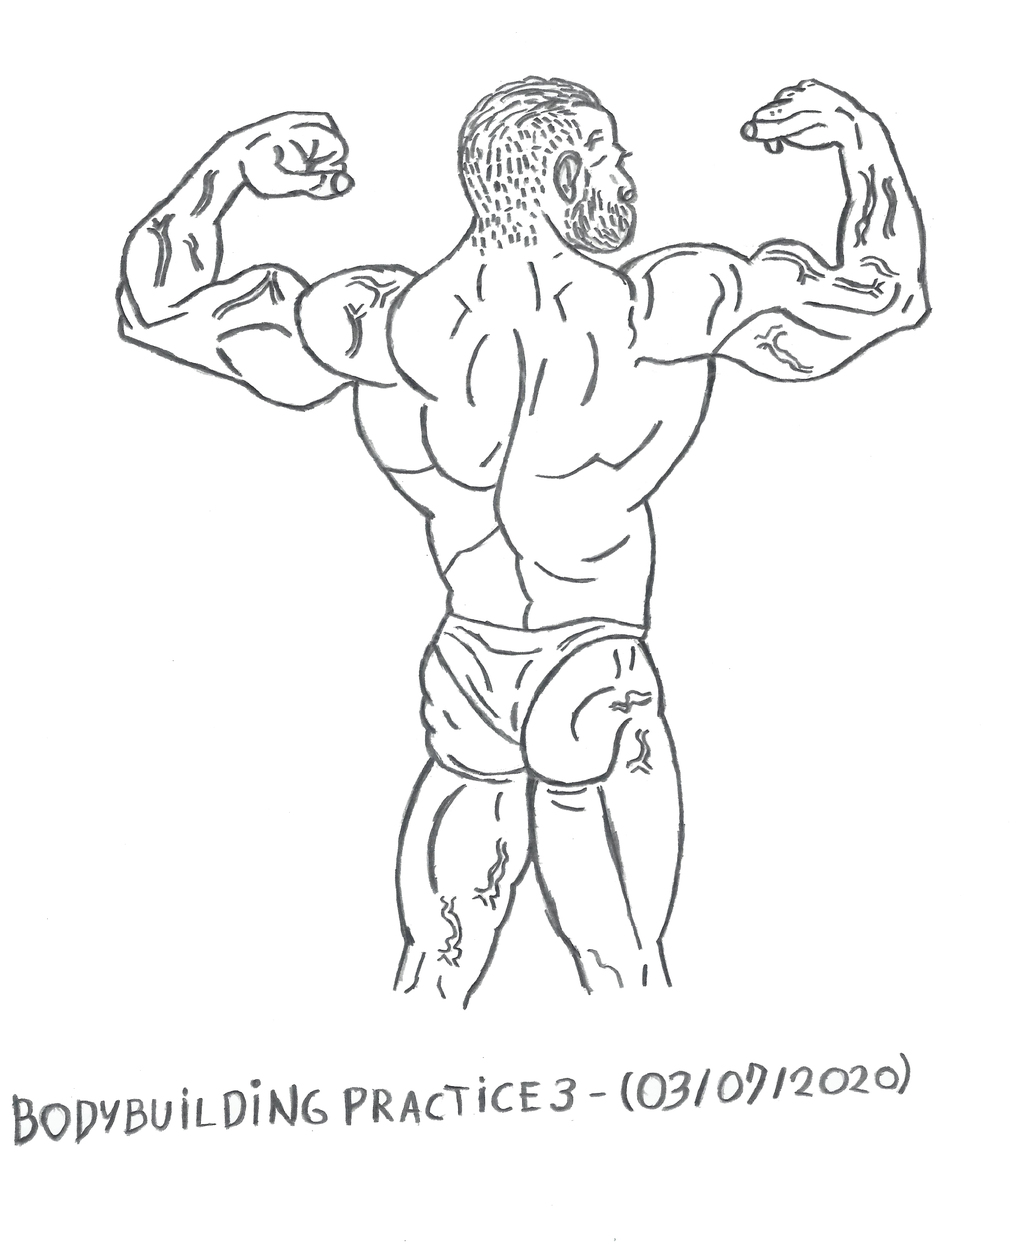 Bodybuilding - Anatomy Practice 3